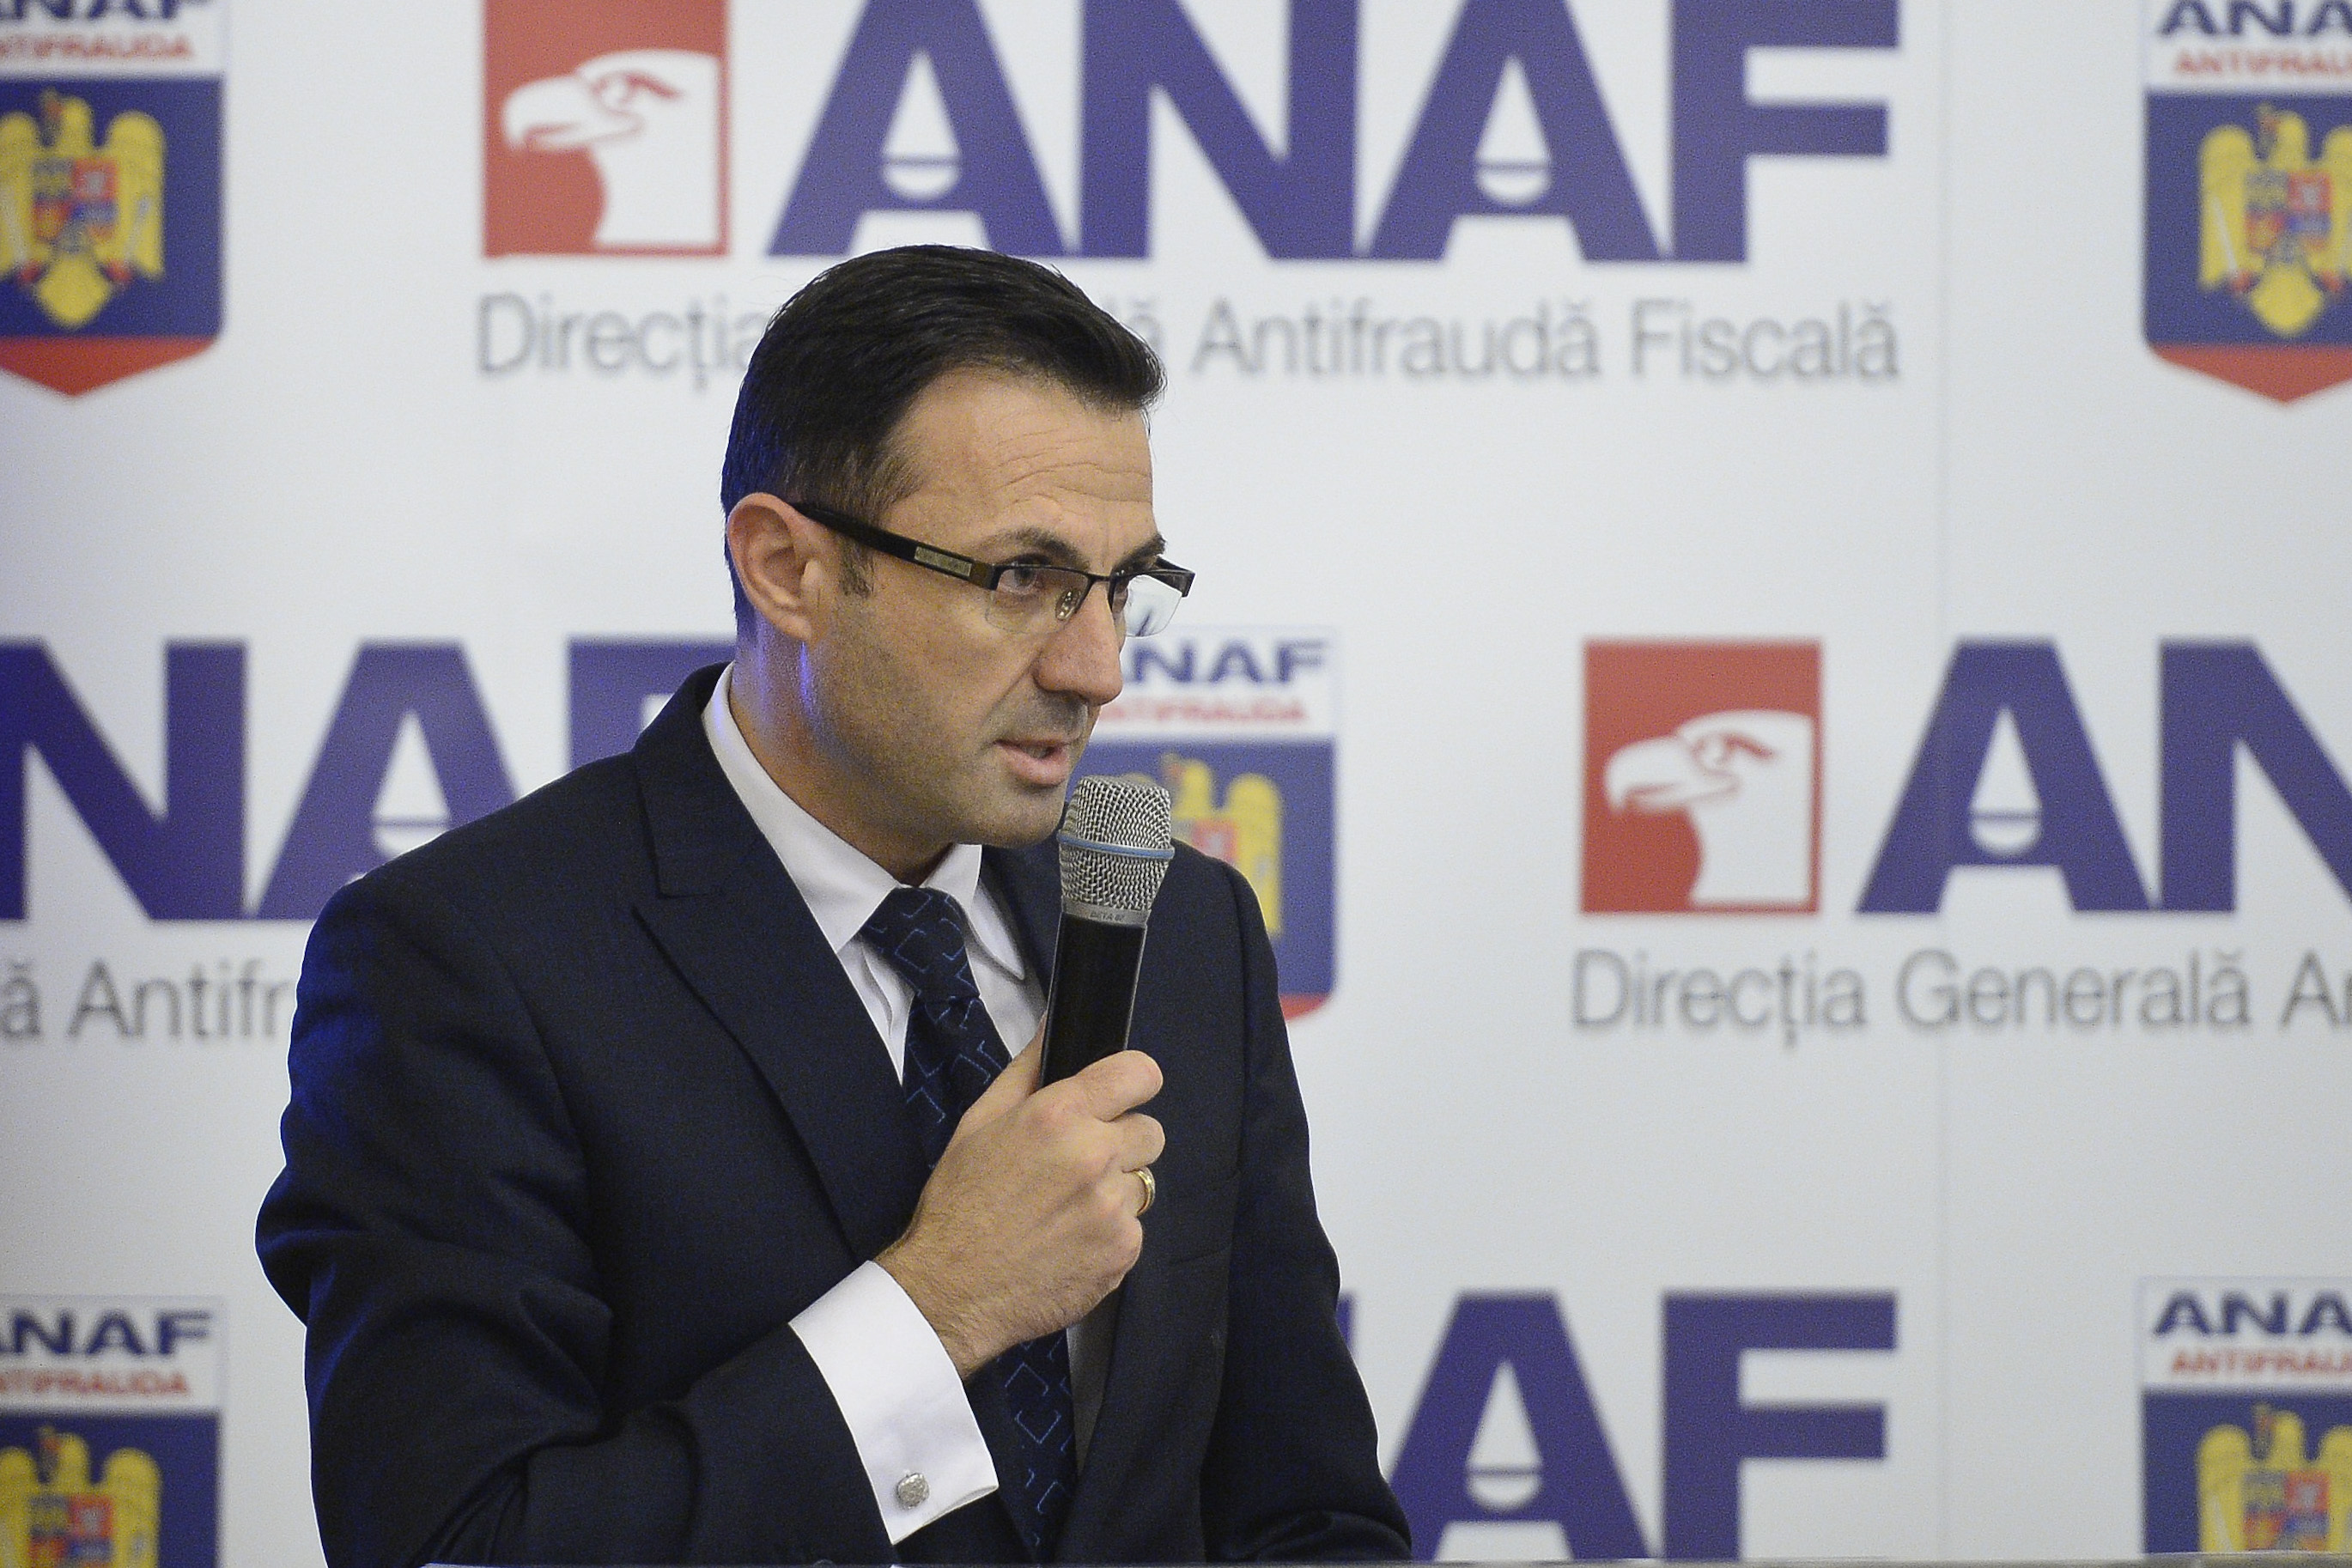  Romeo Nicolae, şeful Direcţiei Generale Antifraudă din cadrul ANAF, reţinut pentru trafic de influenţă, şi-a depus demisia